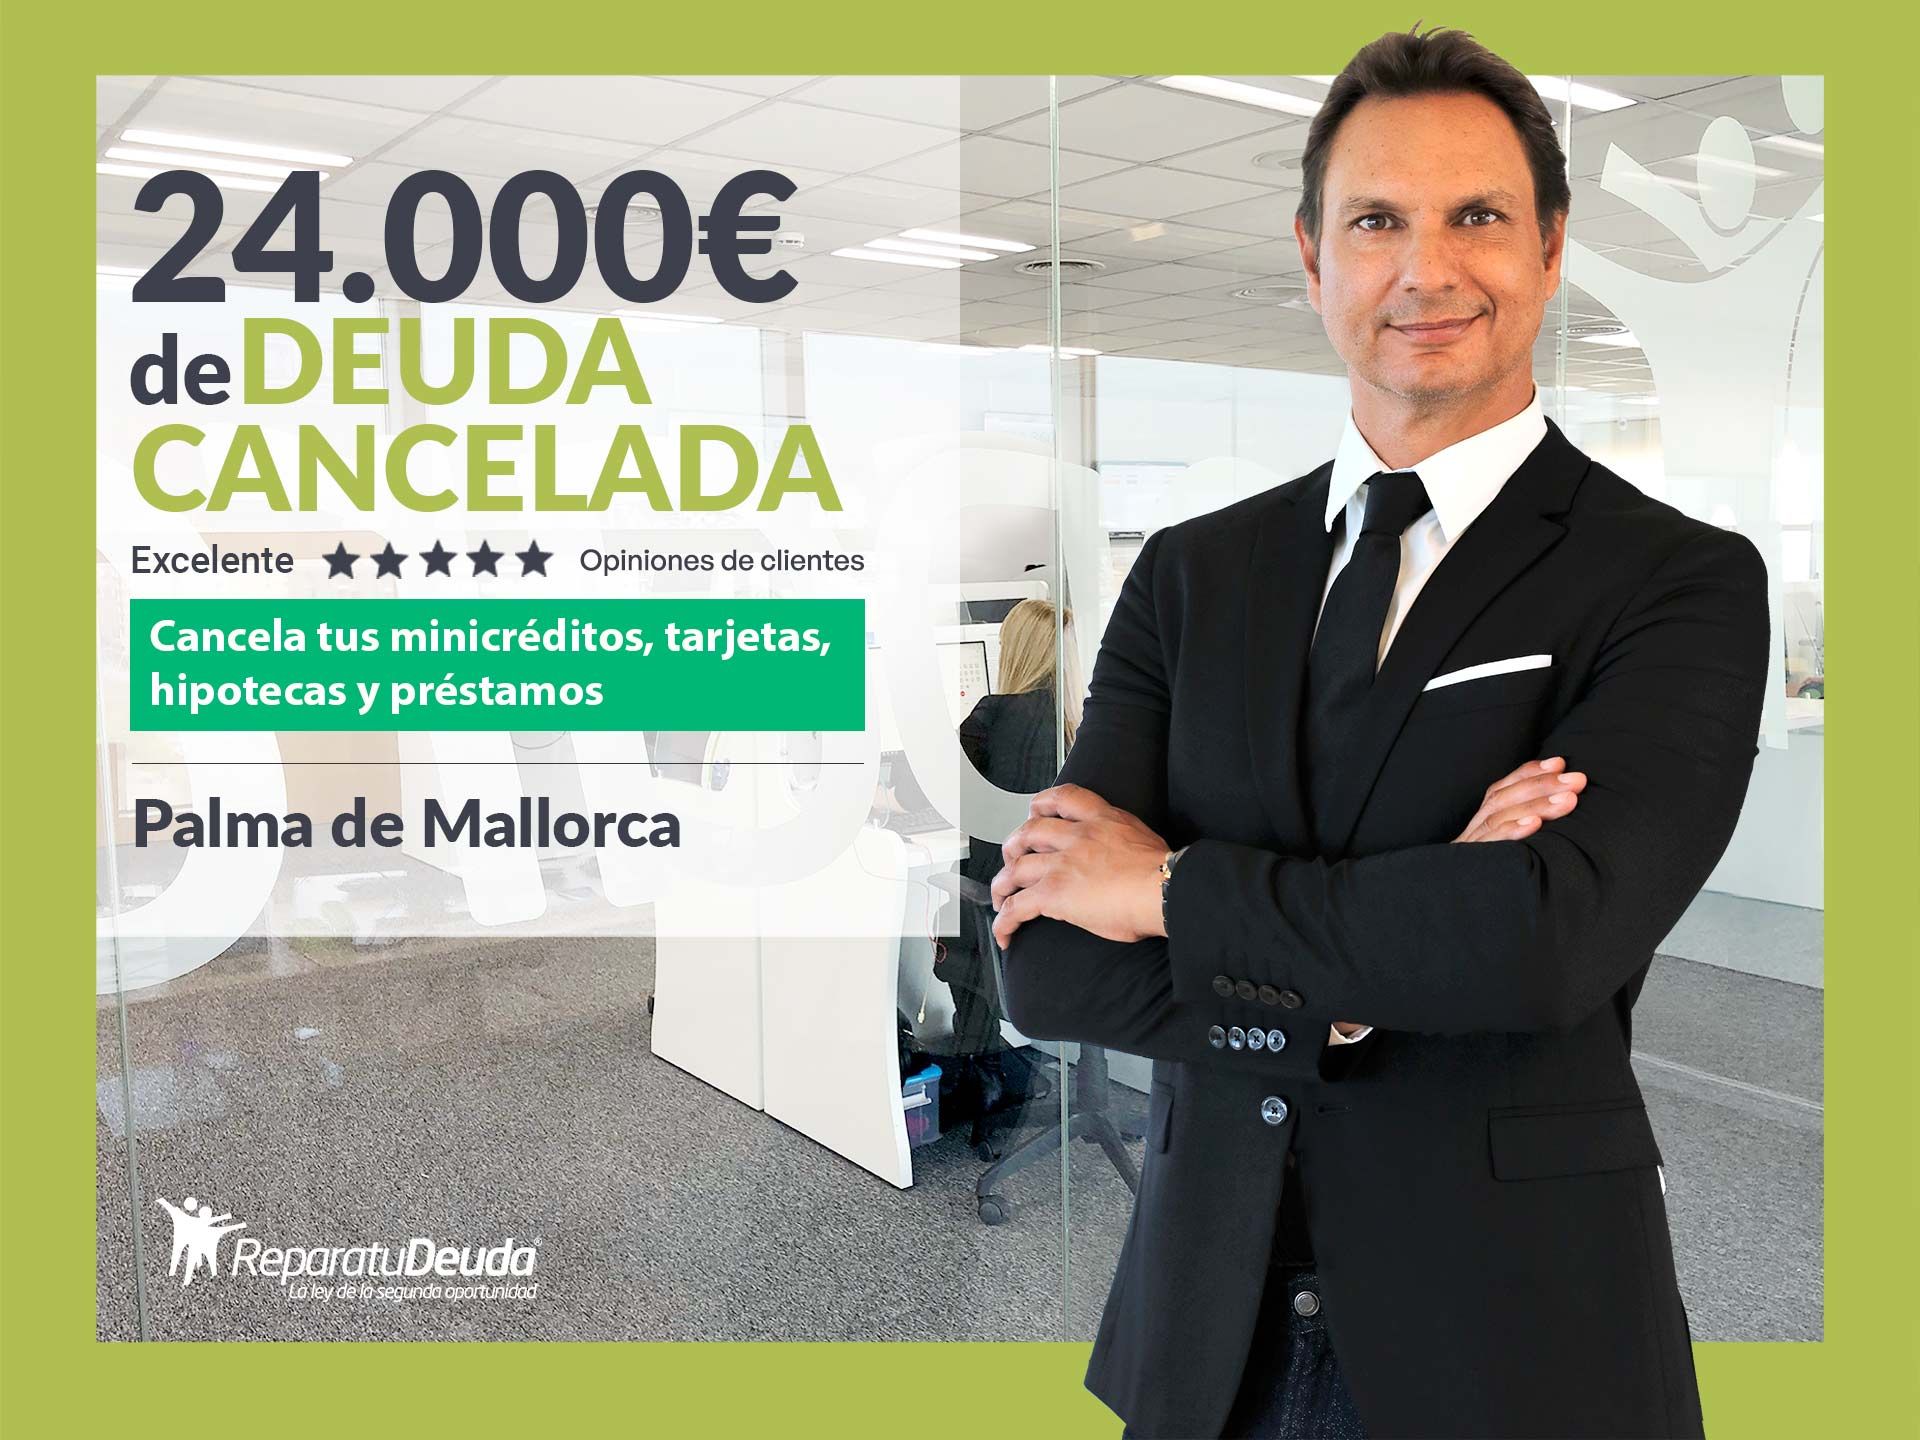 Repara tu Deuda Abogados cancela 24.000? en Palma de Mallorca (Baleares) con la Ley de Segunda Oportunidad